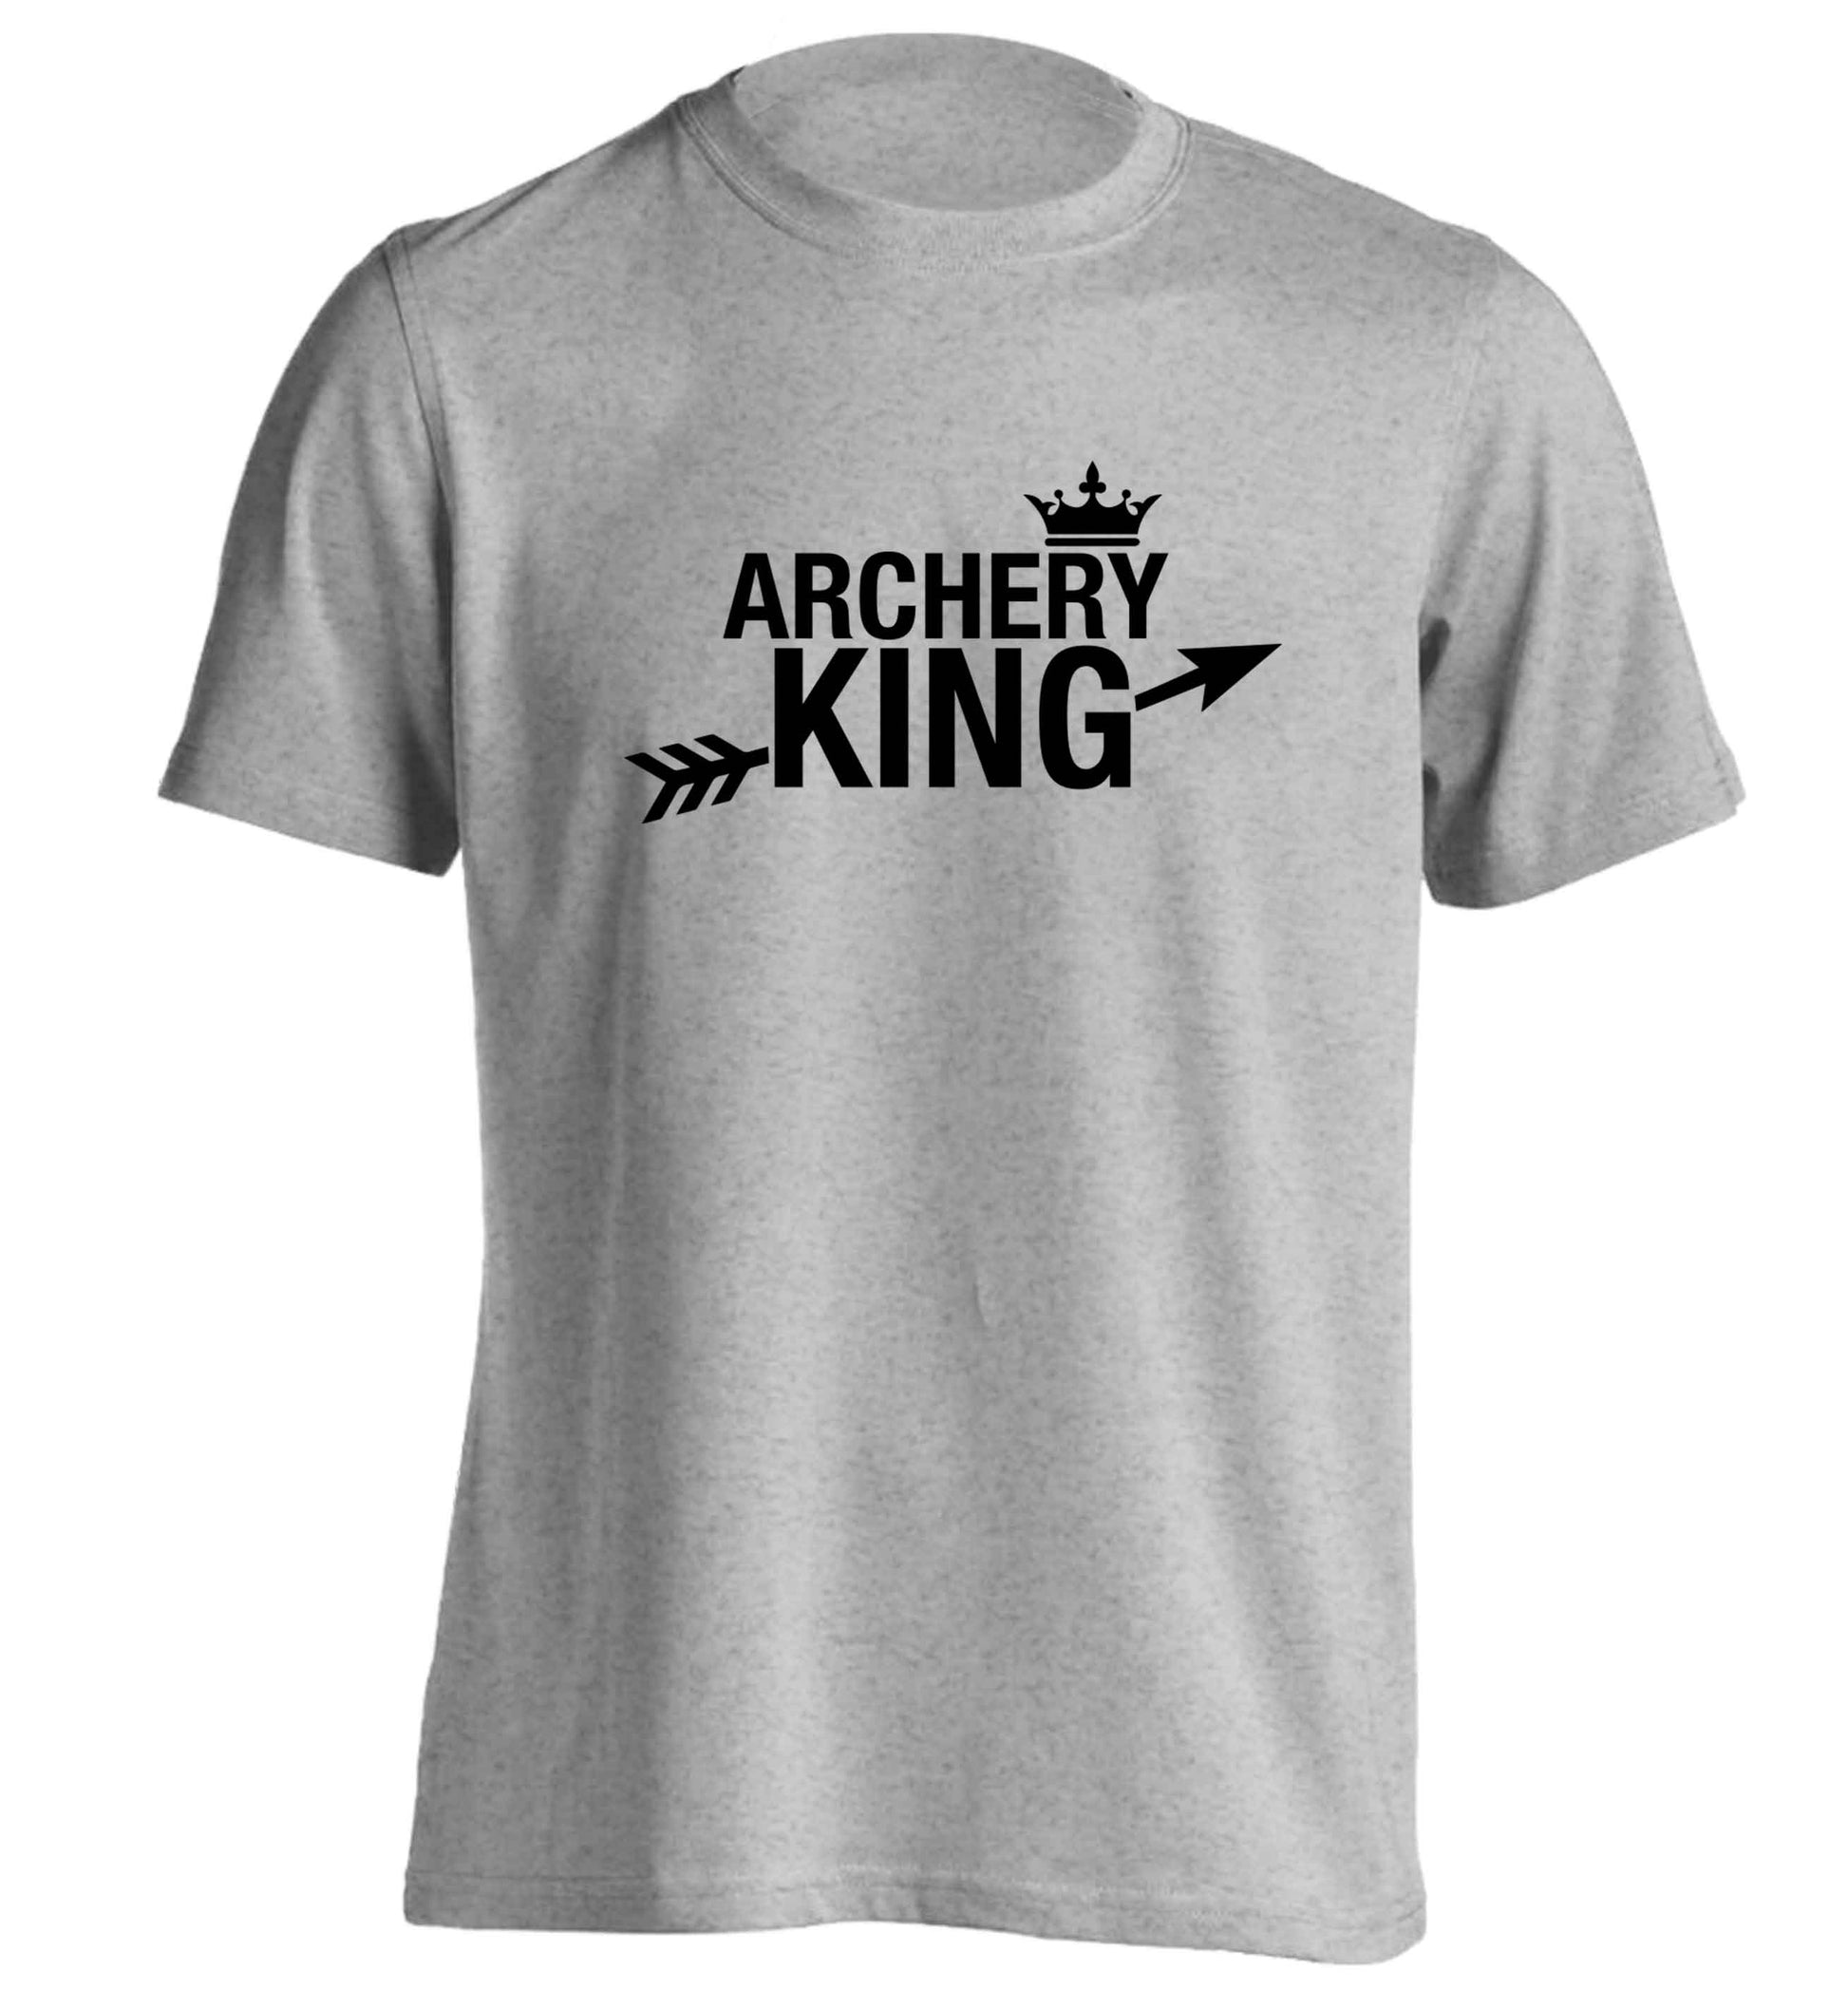 Archery king adults unisex grey Tshirt 2XL